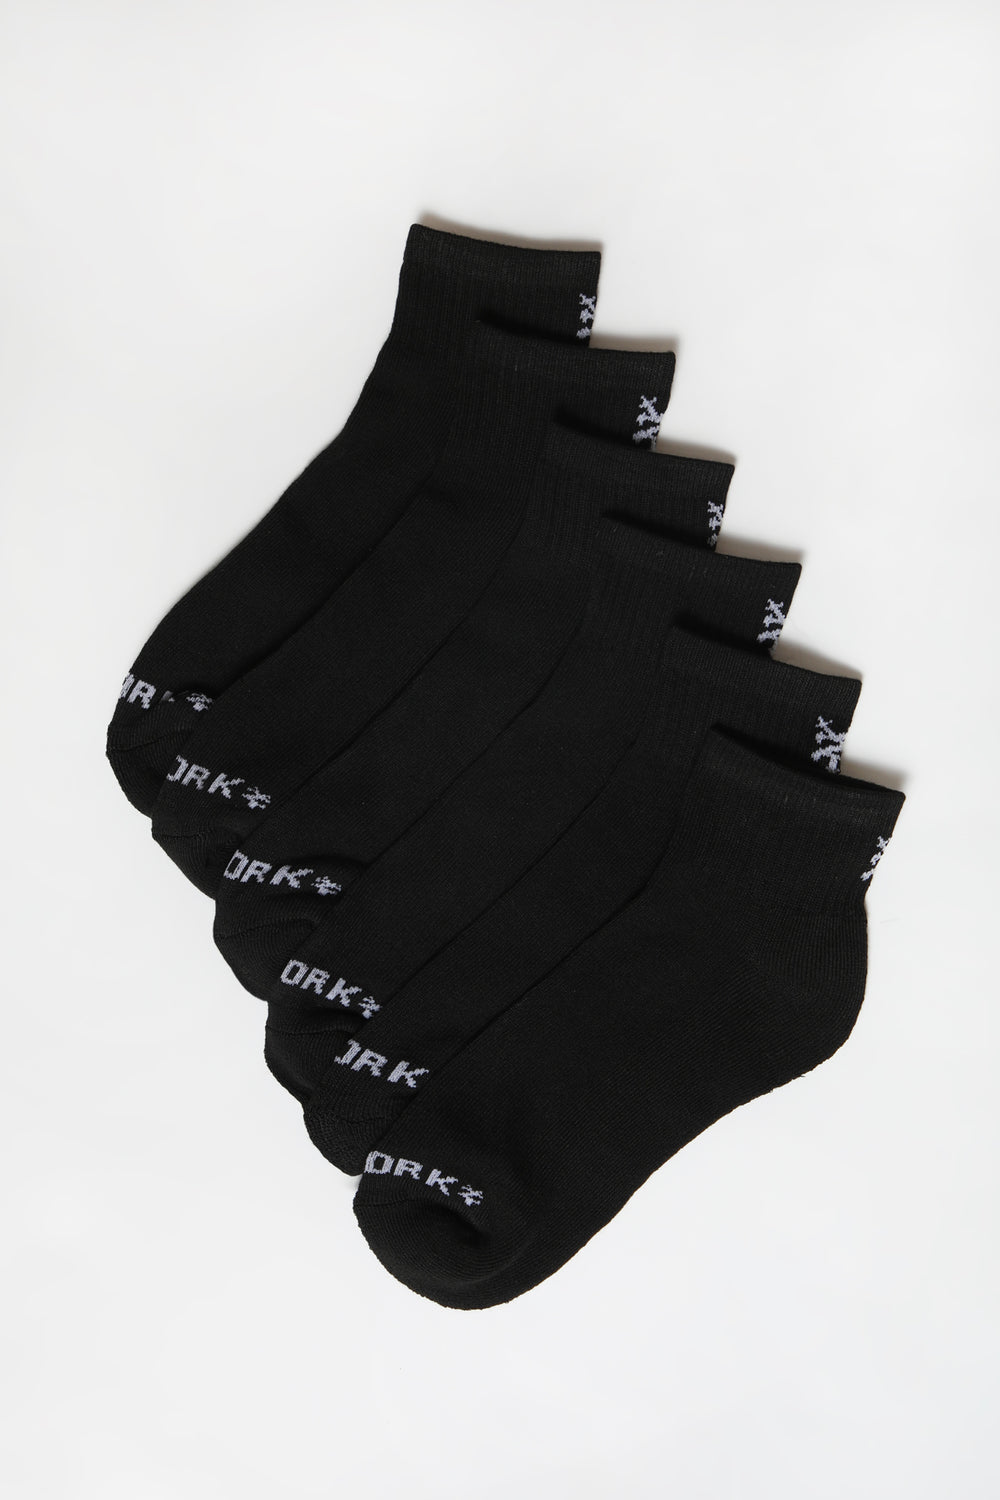 Zoo York Mens Athletic Ankle Socks 6-Pack Black